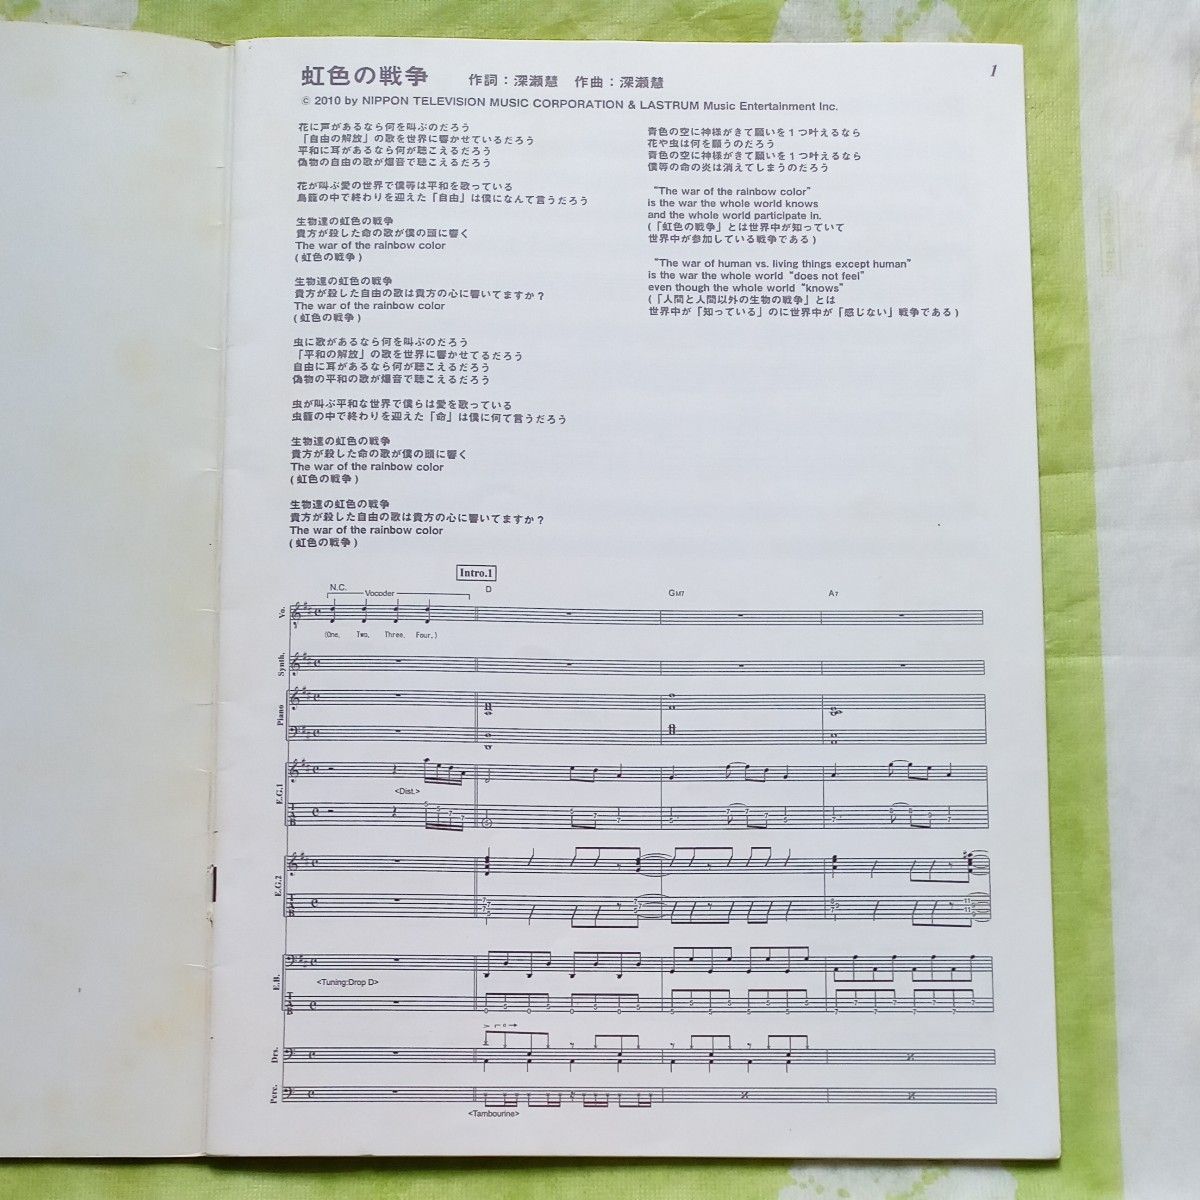 (楽譜) 虹色の戦争／SEKAI NO OWARI (バンドスコアピース BP1471)